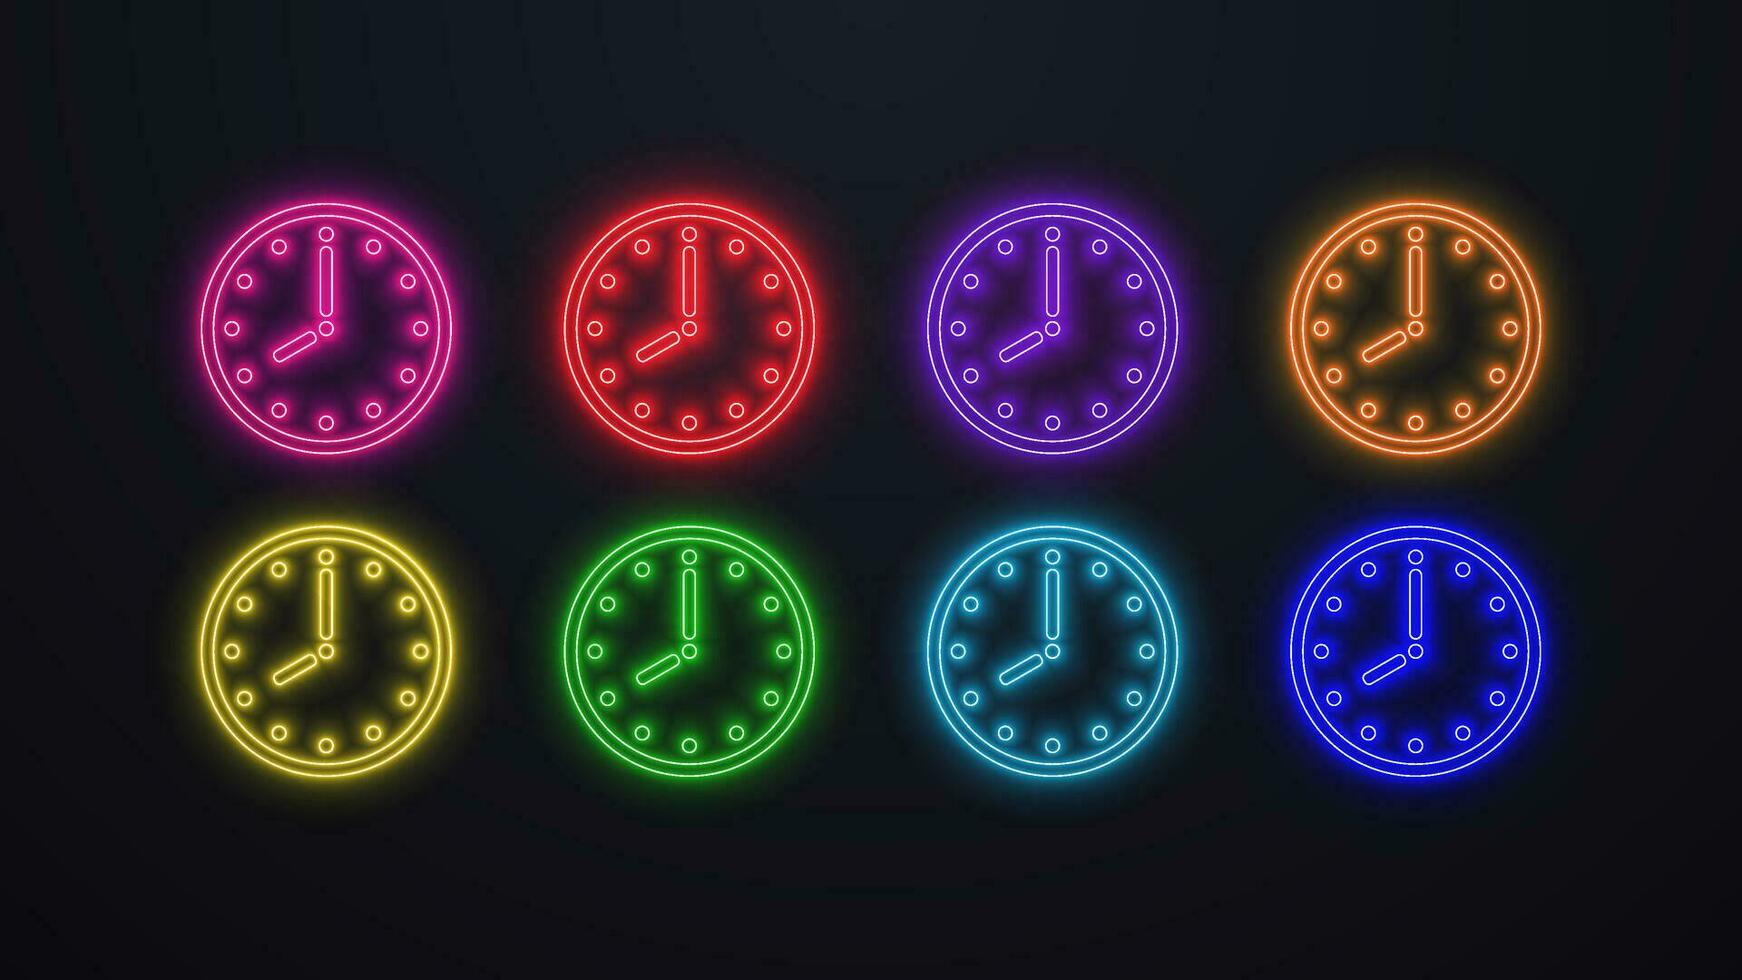 en uppsättning av neon klockor med en ringa och händer i annorlunda färger grön, blå, orange, gul, grön, röd på en mörk bakgrund. vektor